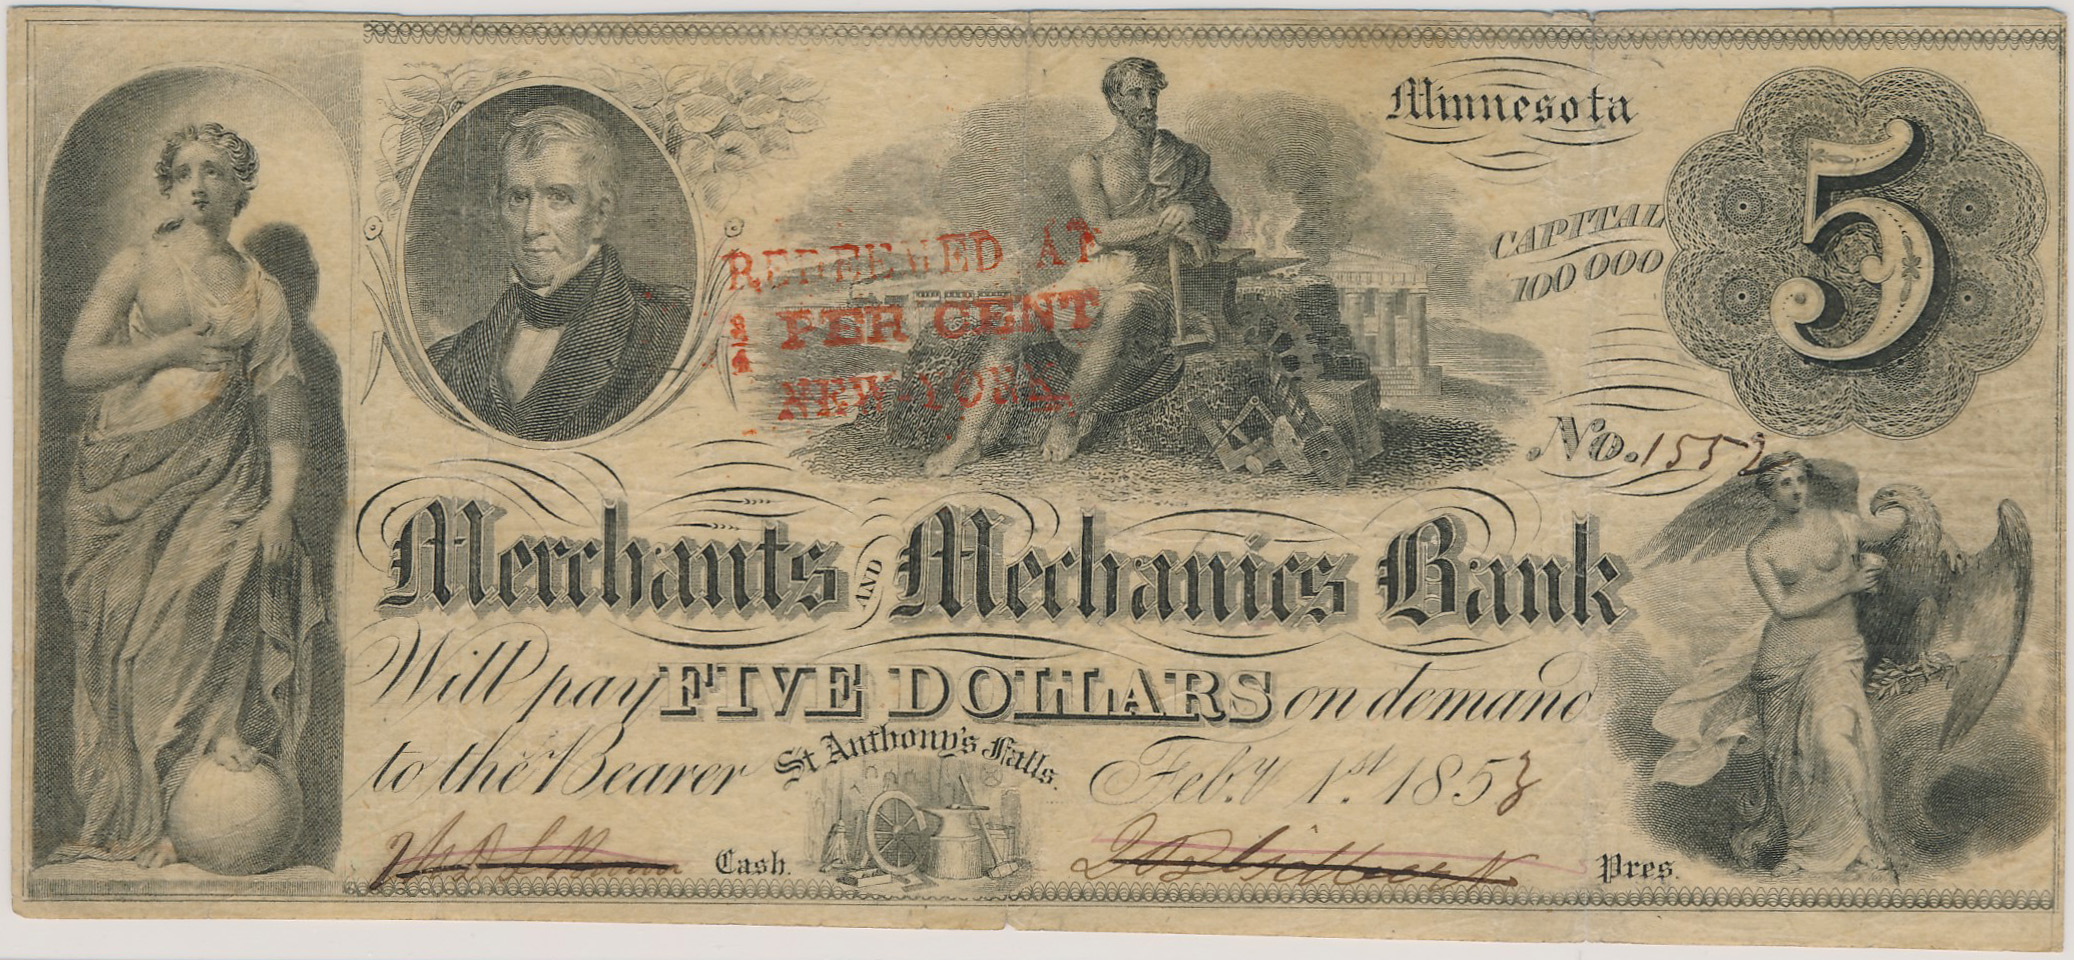 $5 Merchants and Mechanics Bank